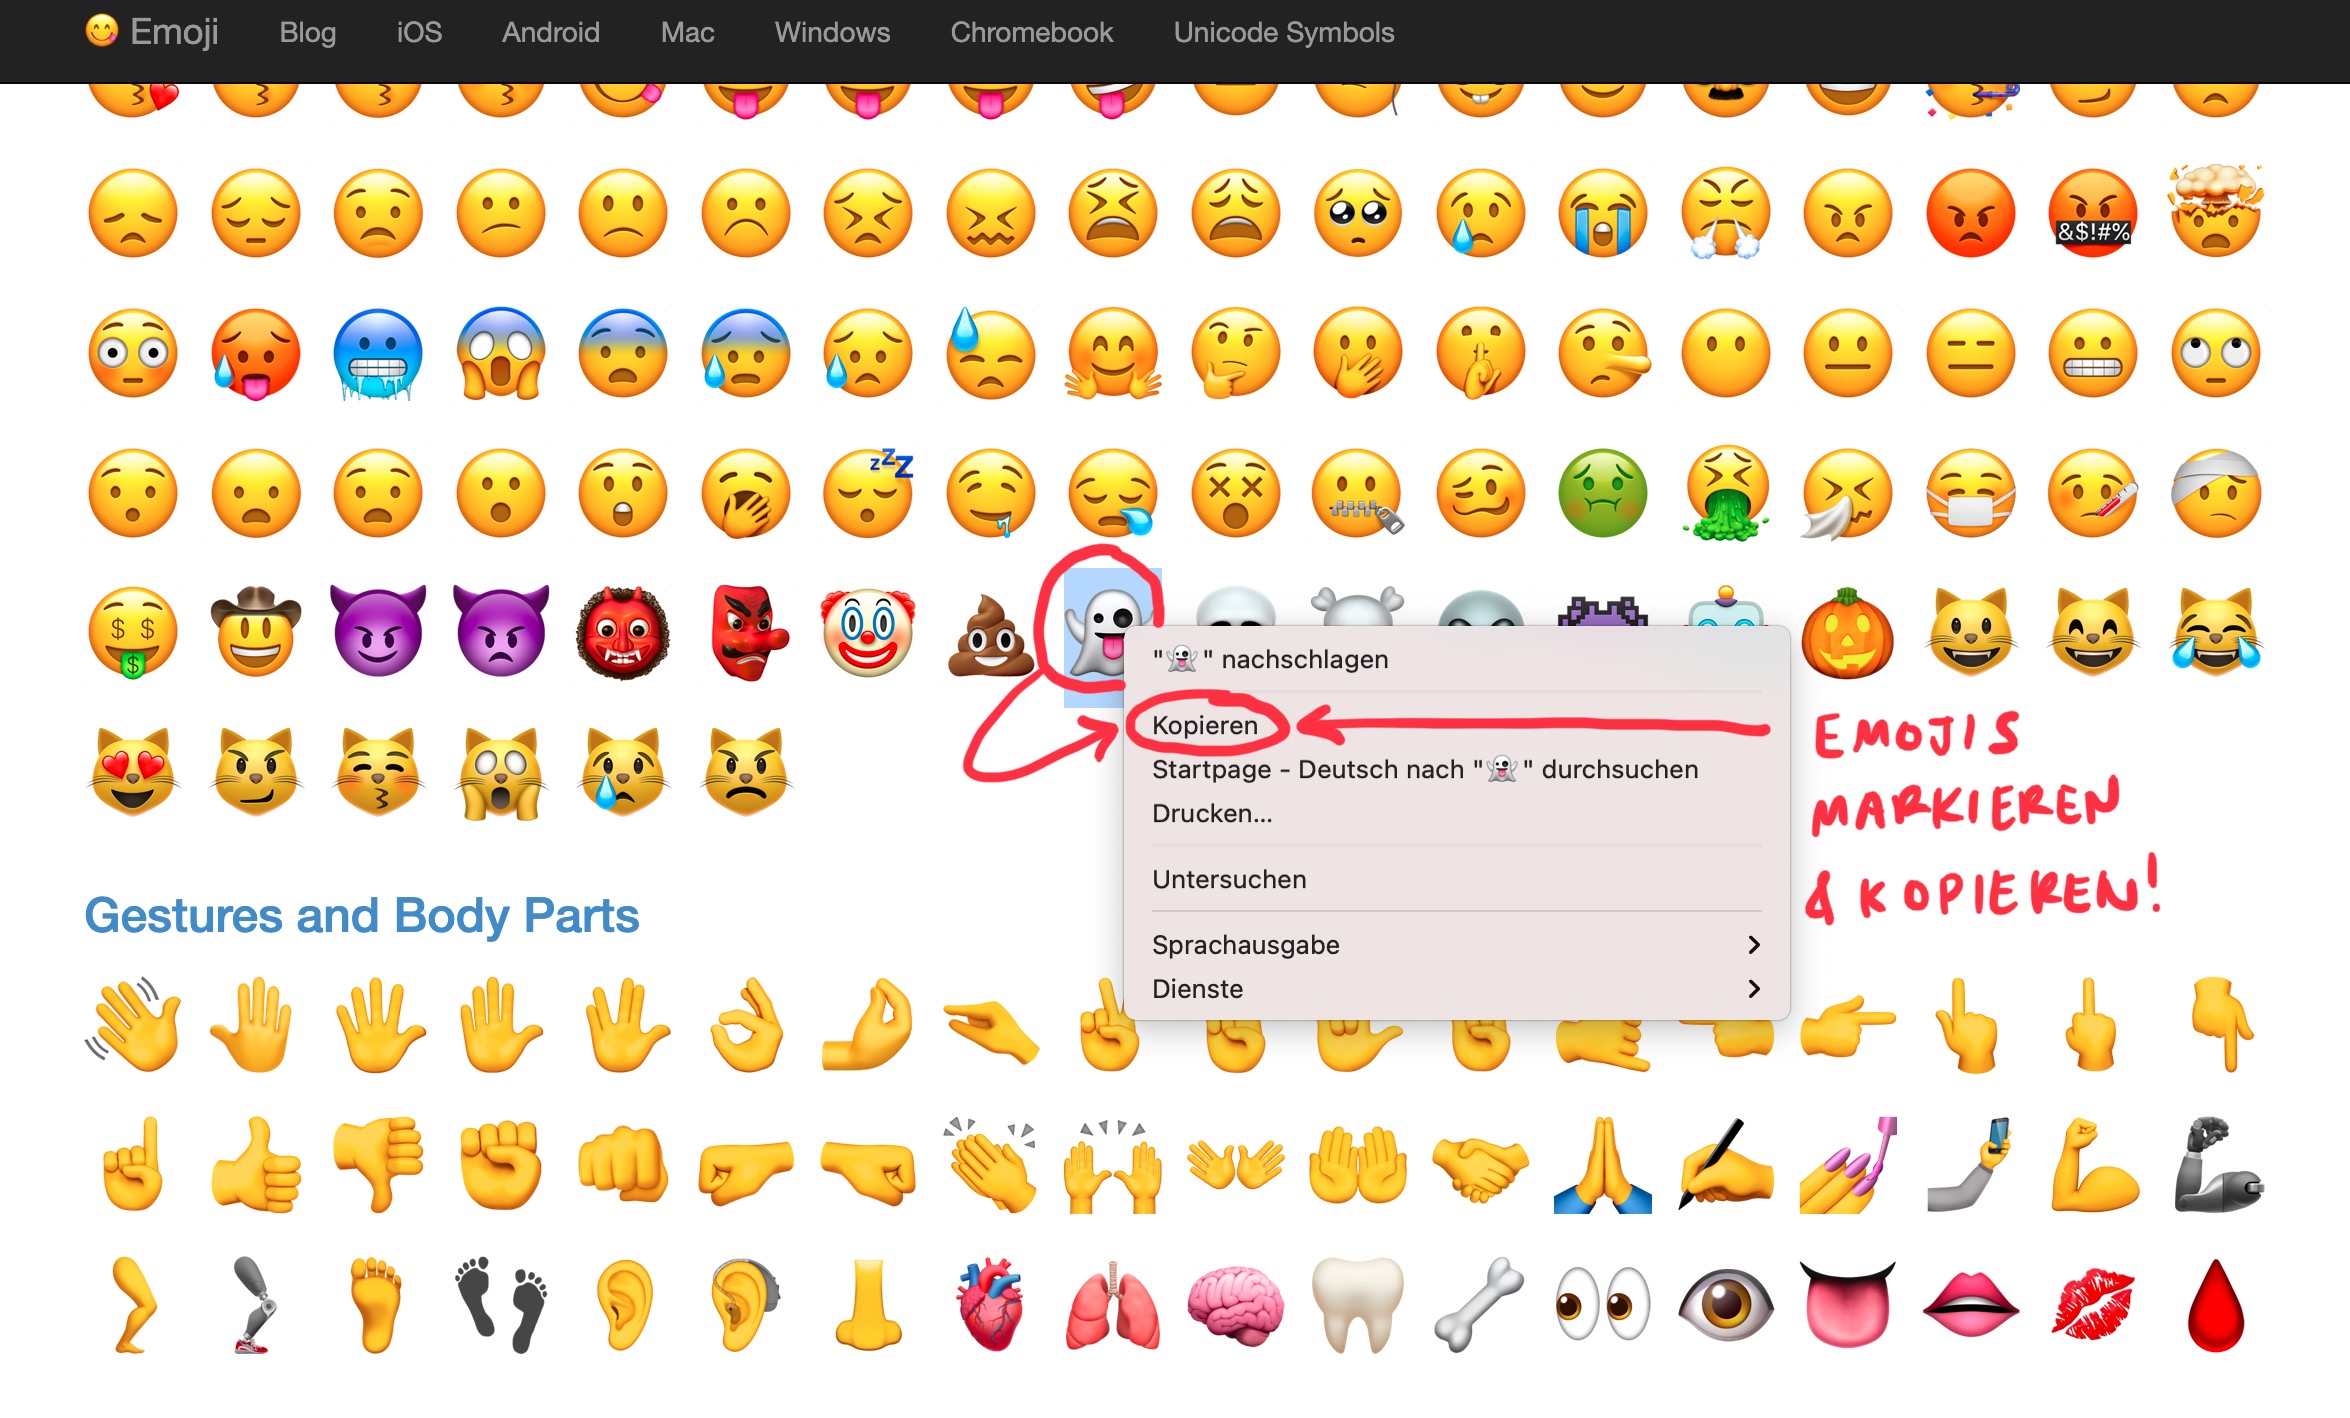 Bilder zum kopieren emoji ღ Herzen